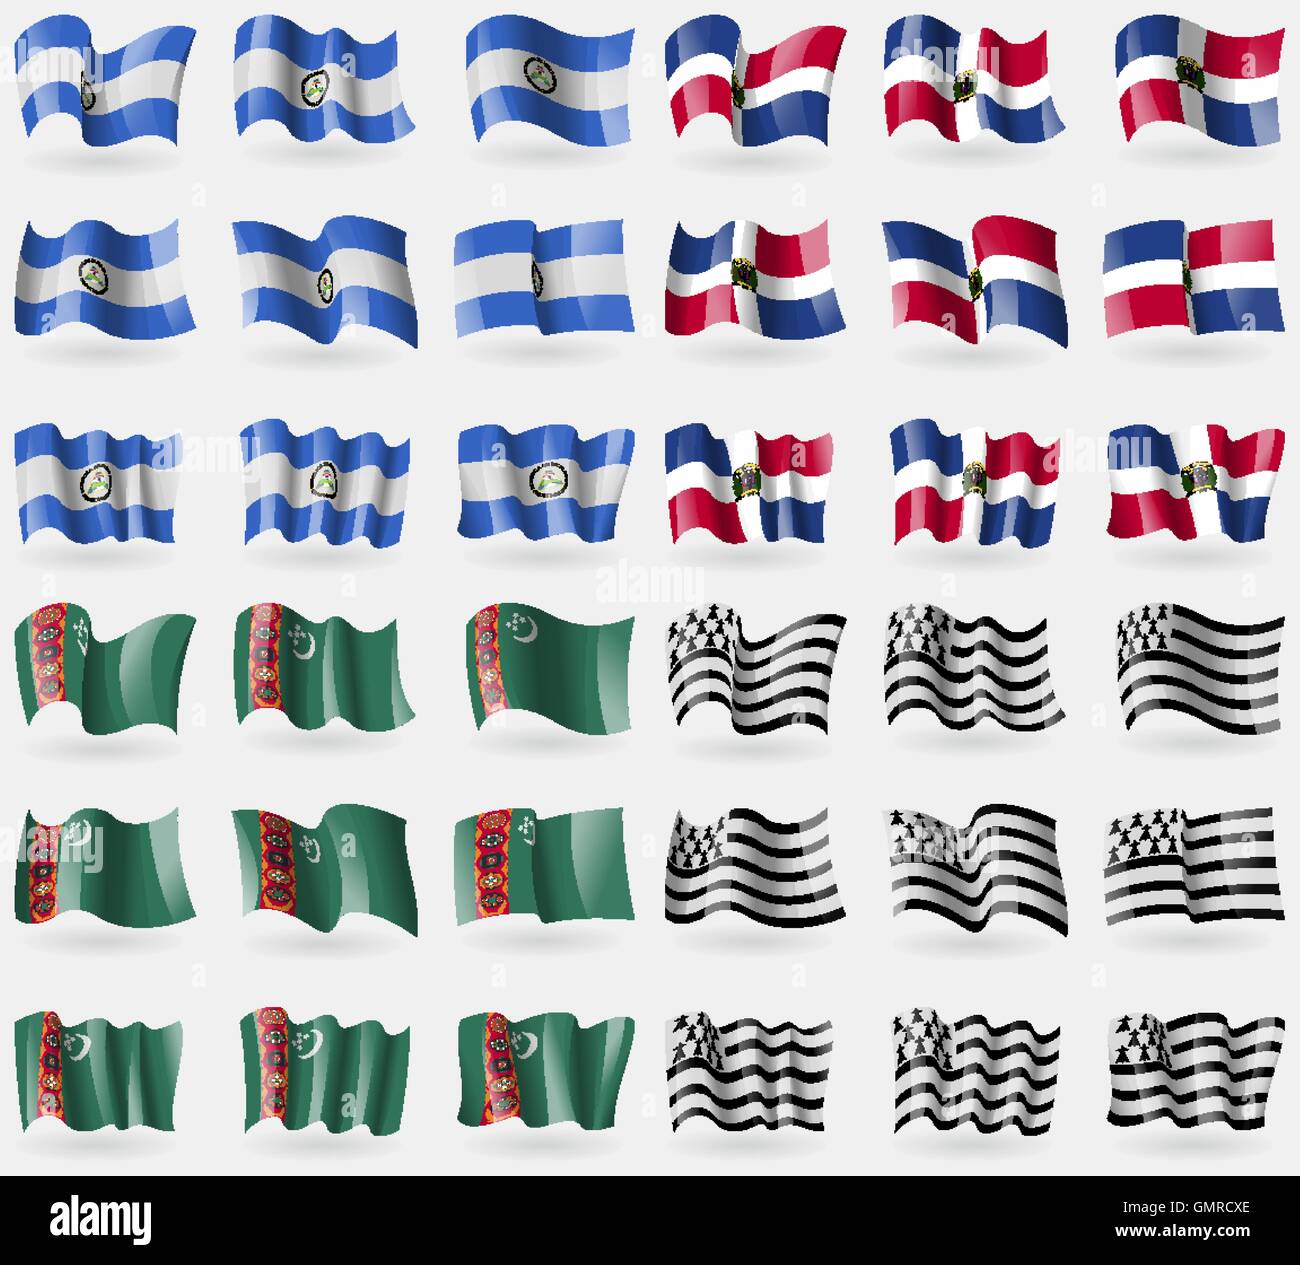 Le Nicaragua, la République dominicaine, le Turkménistan, la Bretagne. Ensemble de 36 drapeaux des pays du monde. Vector Illustration de Vecteur